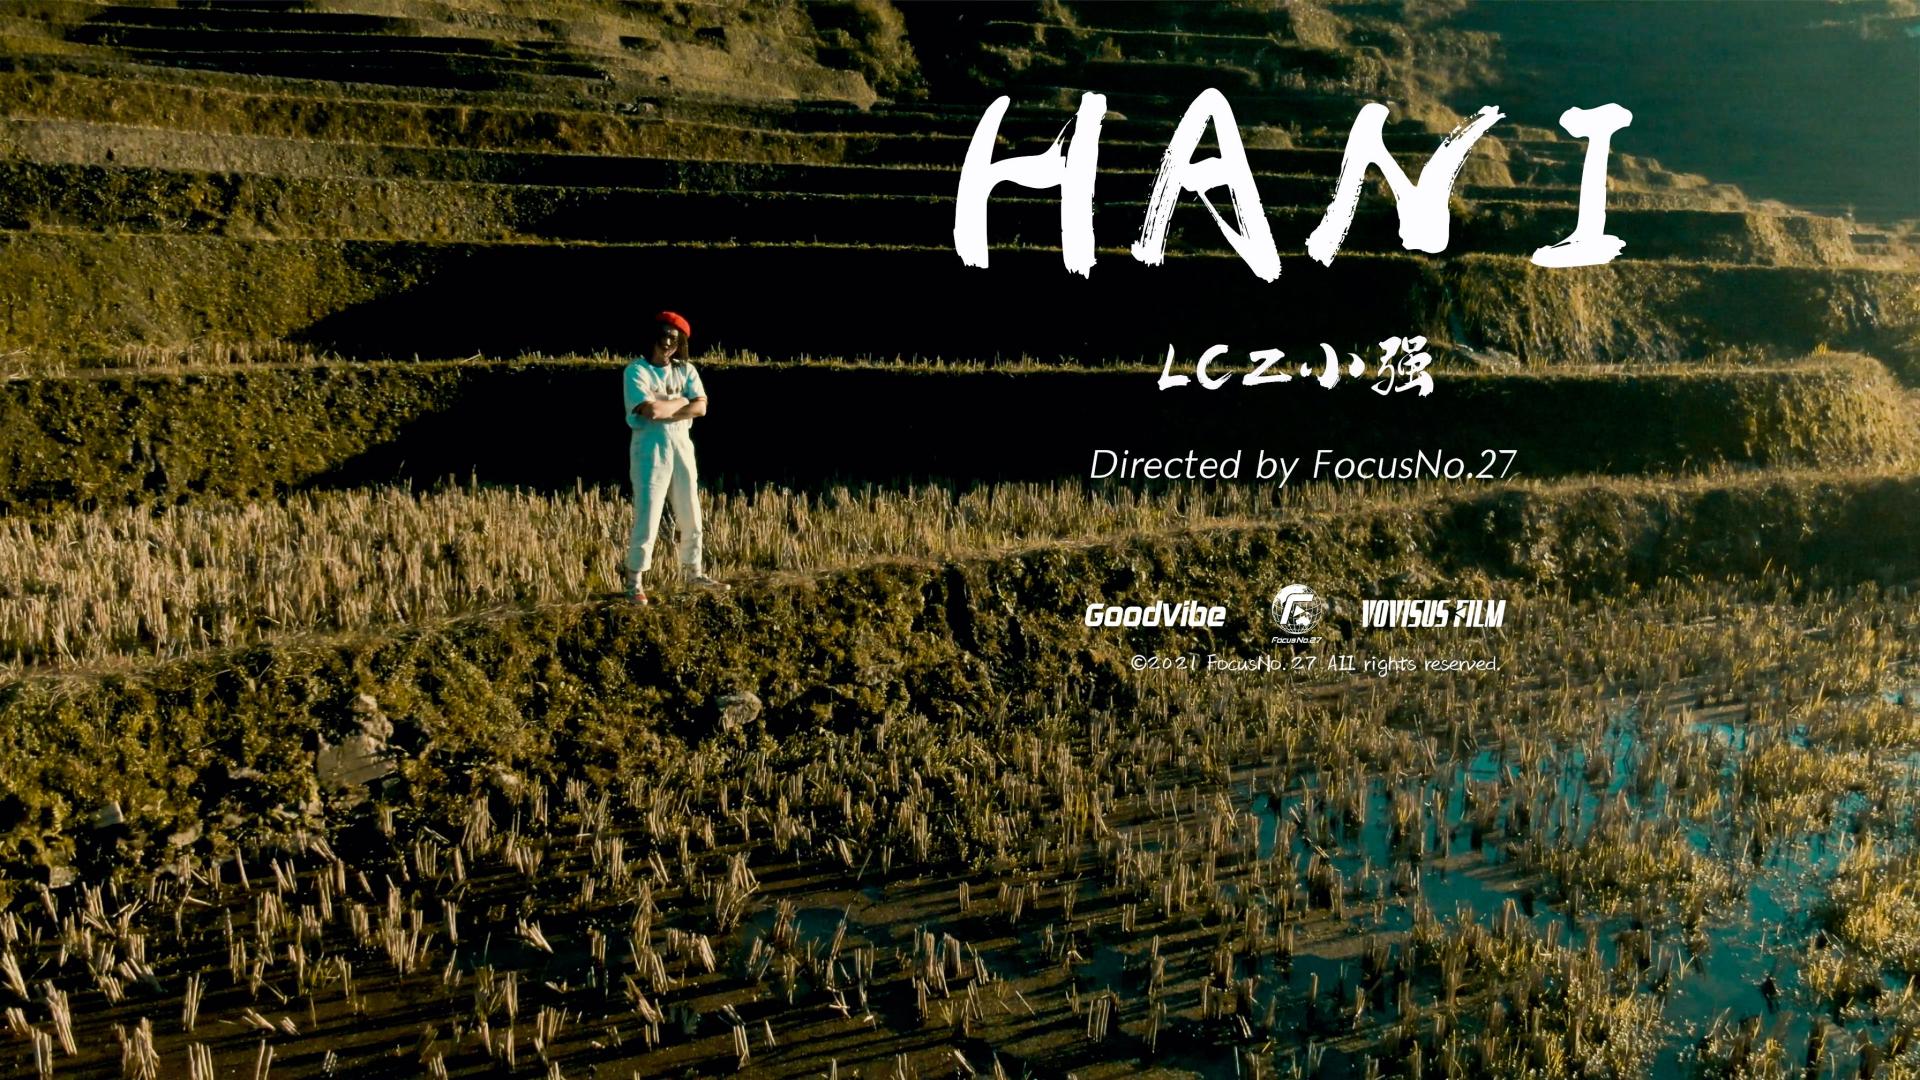 Lcz小强“HANI”全新MV预告/4K/FocusNo.27